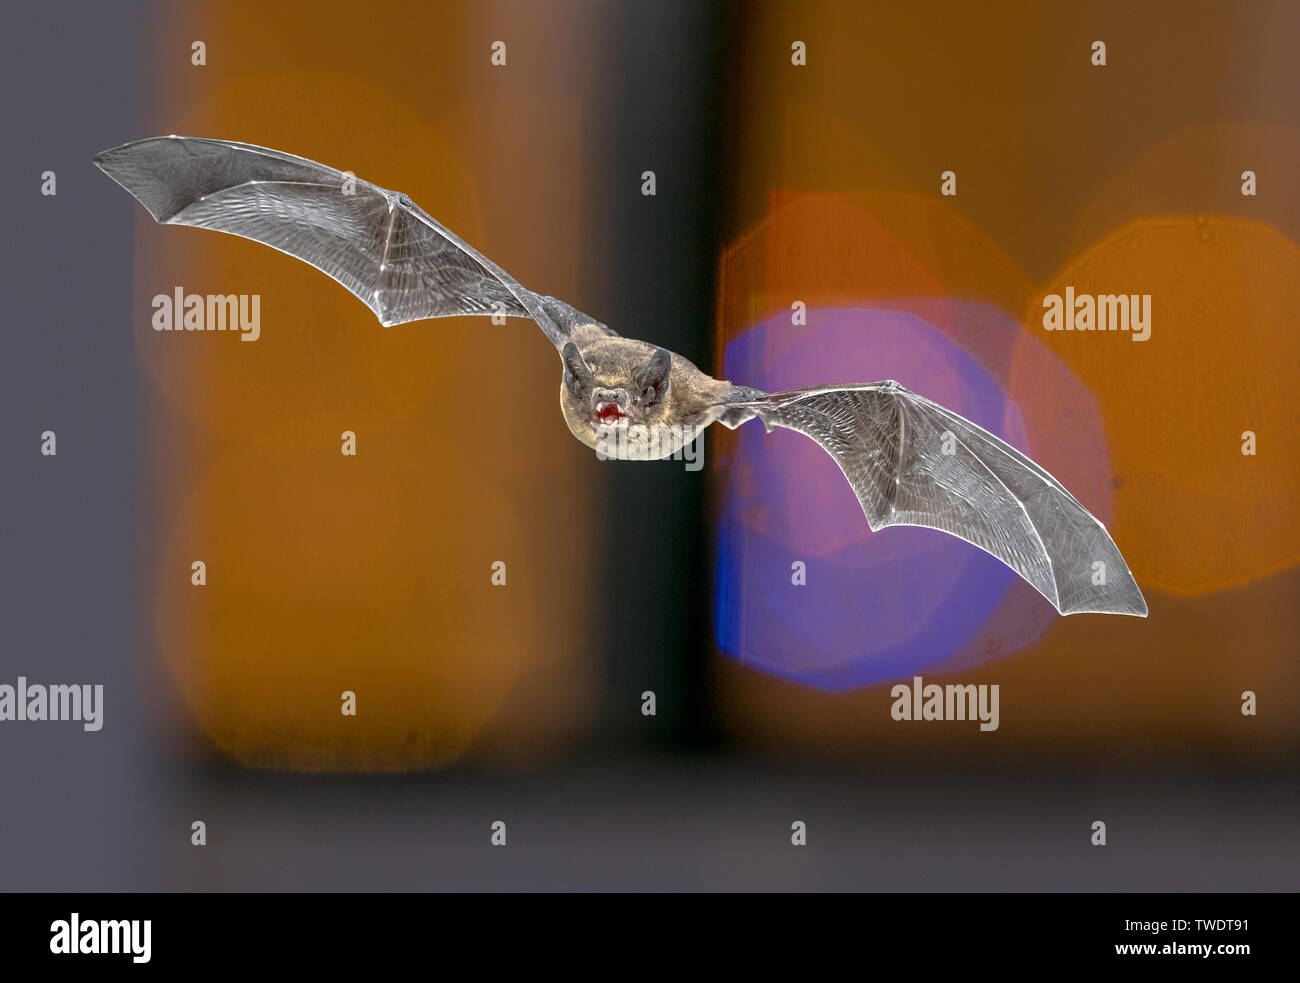 Flying Pipistrelle bat (Pipistrellus pipistrellus) la caccia di animali su sfondo colorato di finestra nel sottotetto della chiesa mentre le luci sono accese attraverso. T Foto Stock